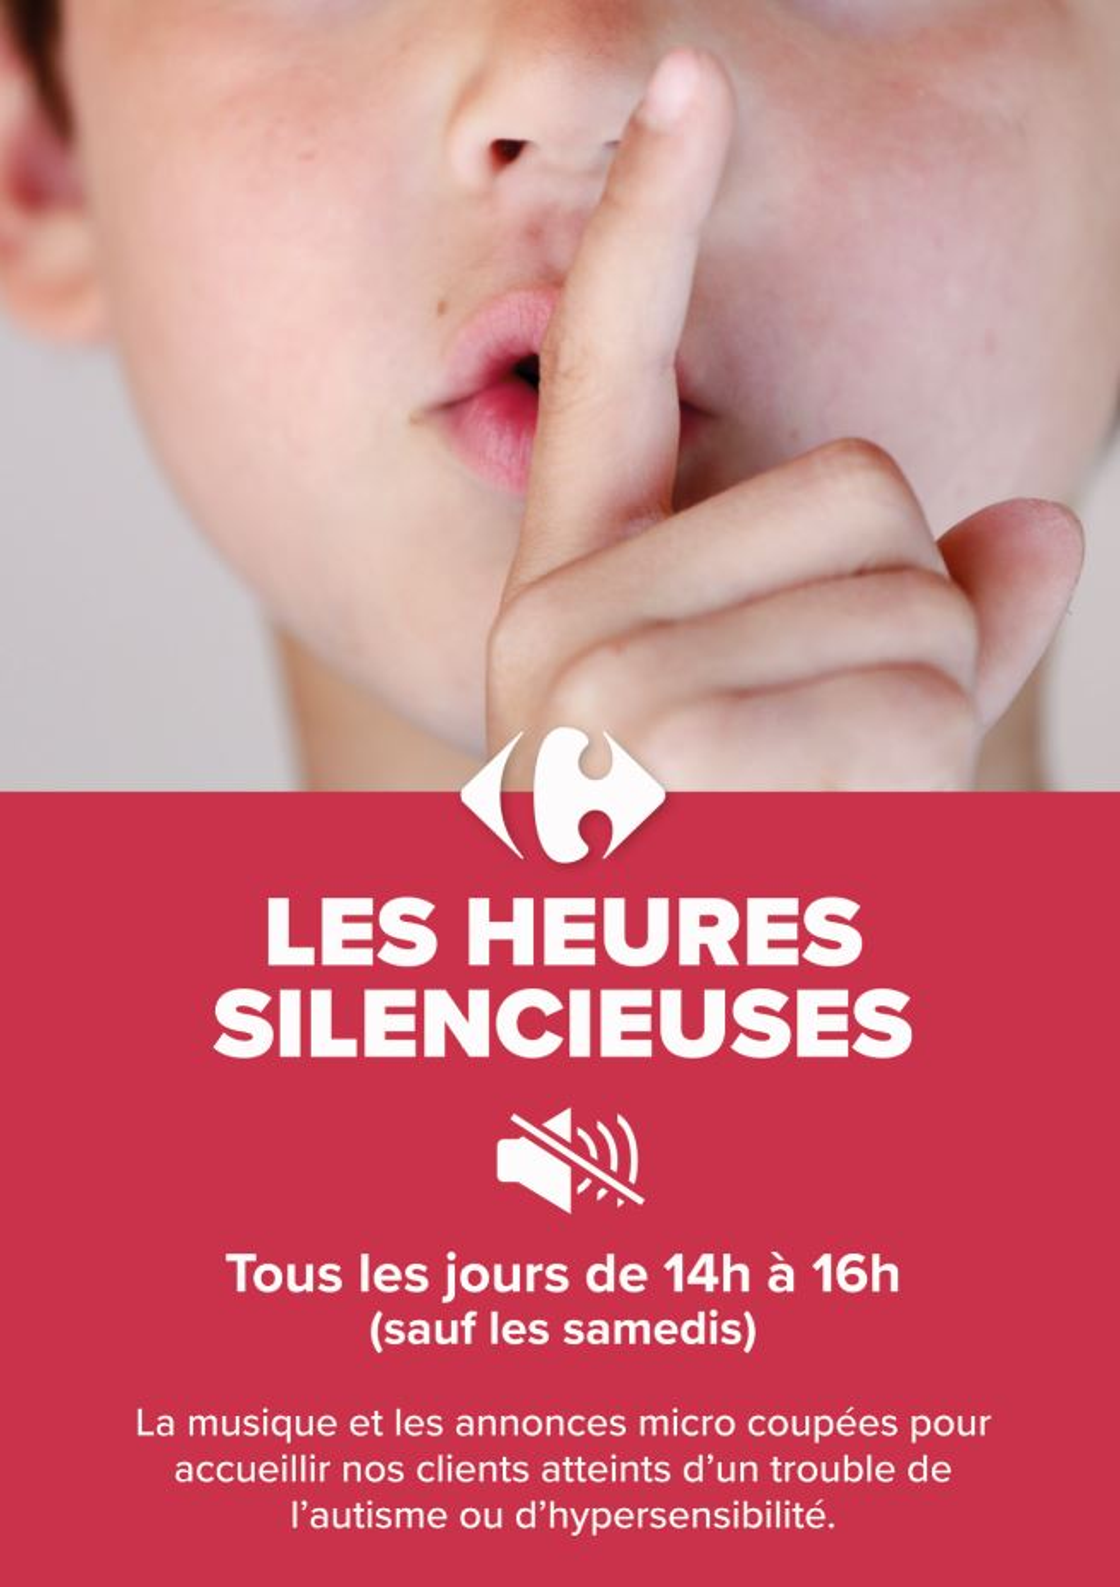 Carrefour adopte deux heures silencieuses par jour dans ses magasins en Belgique